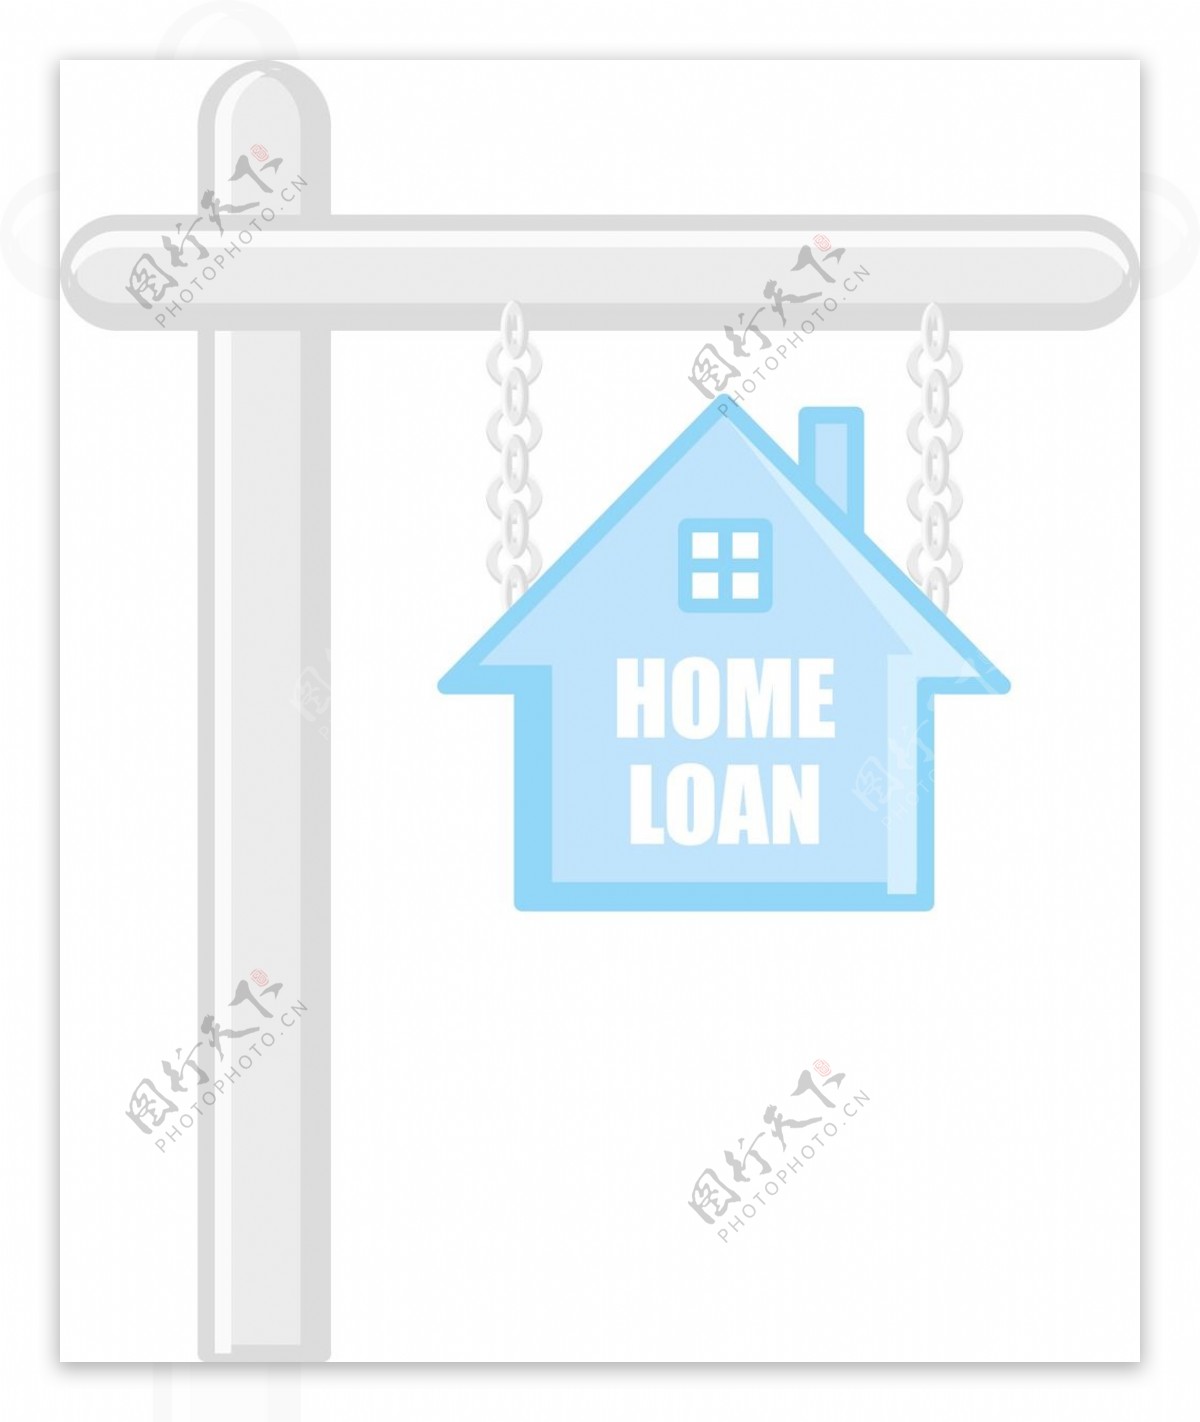 房屋贷款的房地产概念矢量字符的卡通插画